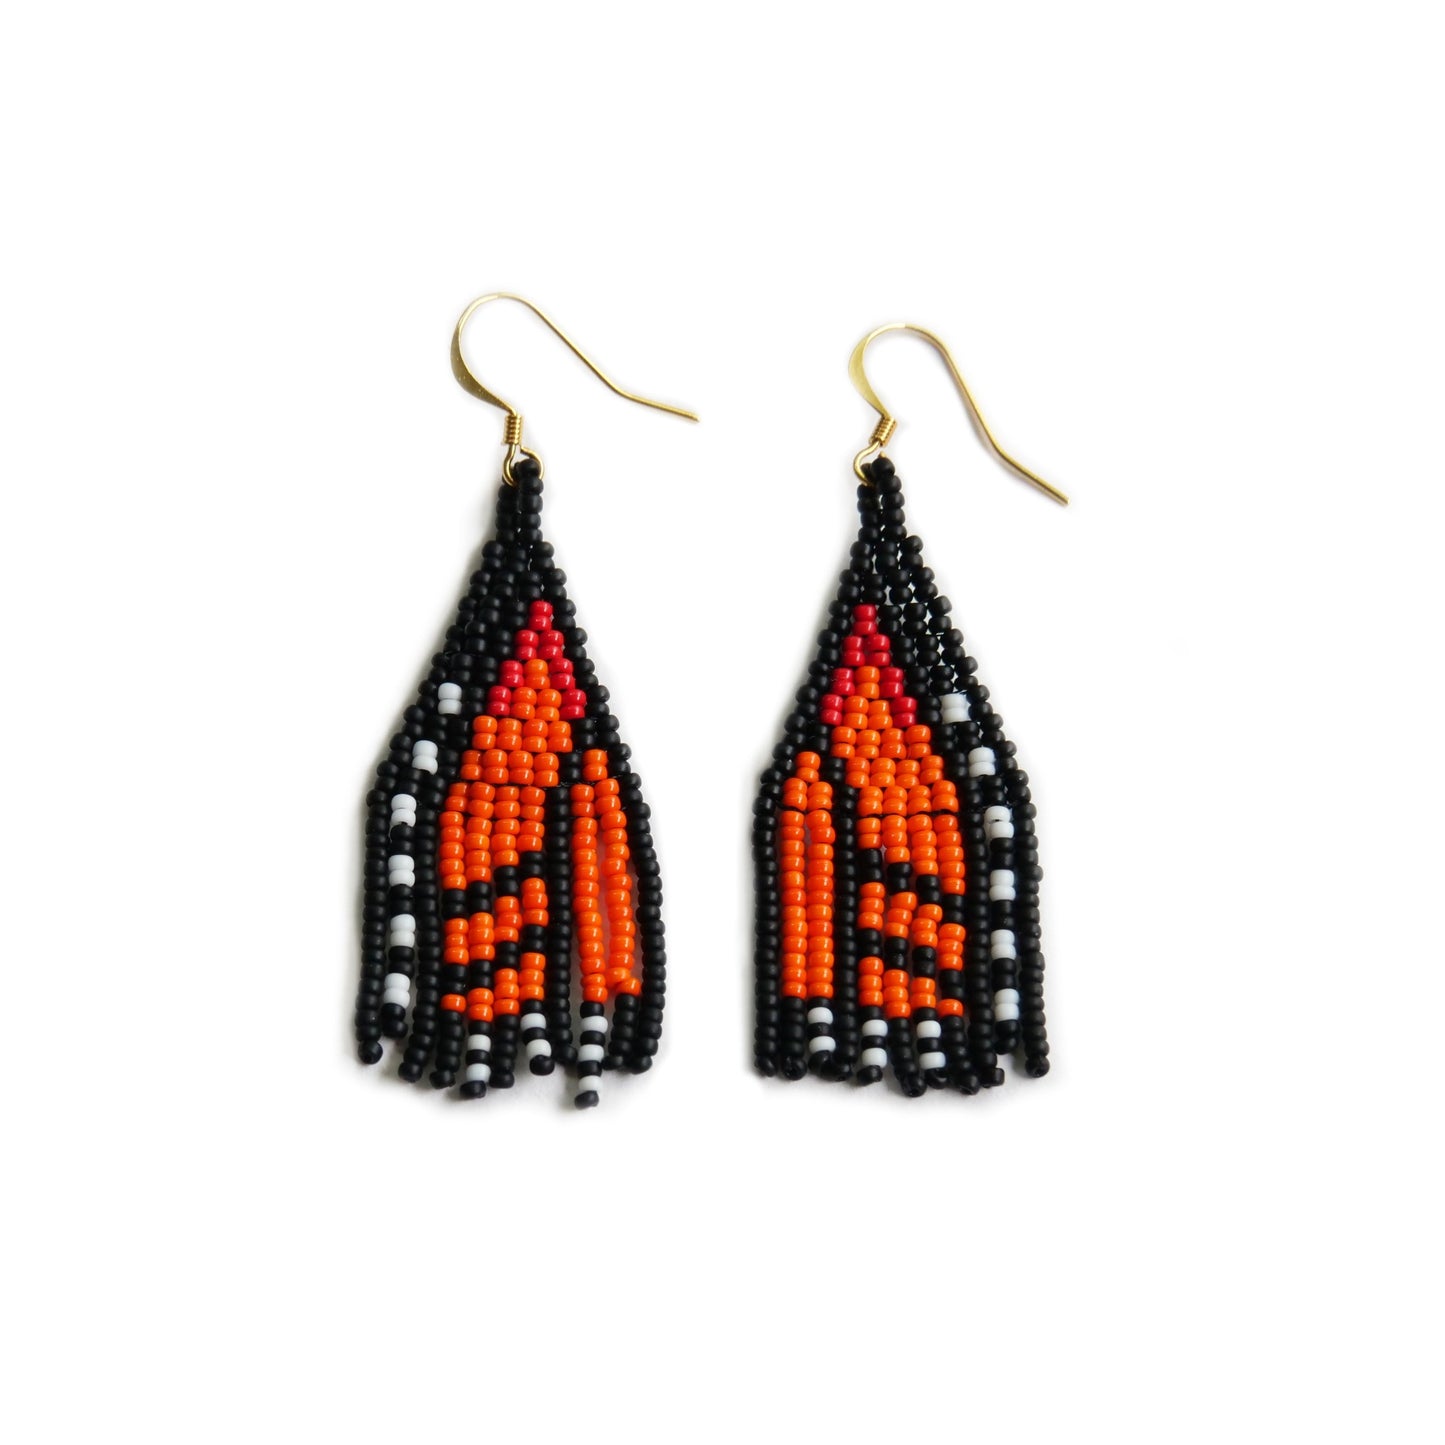 Orange Monarch Butterfly beaded earrings handmade by Canadian indigenous artist Bead n' Butter.